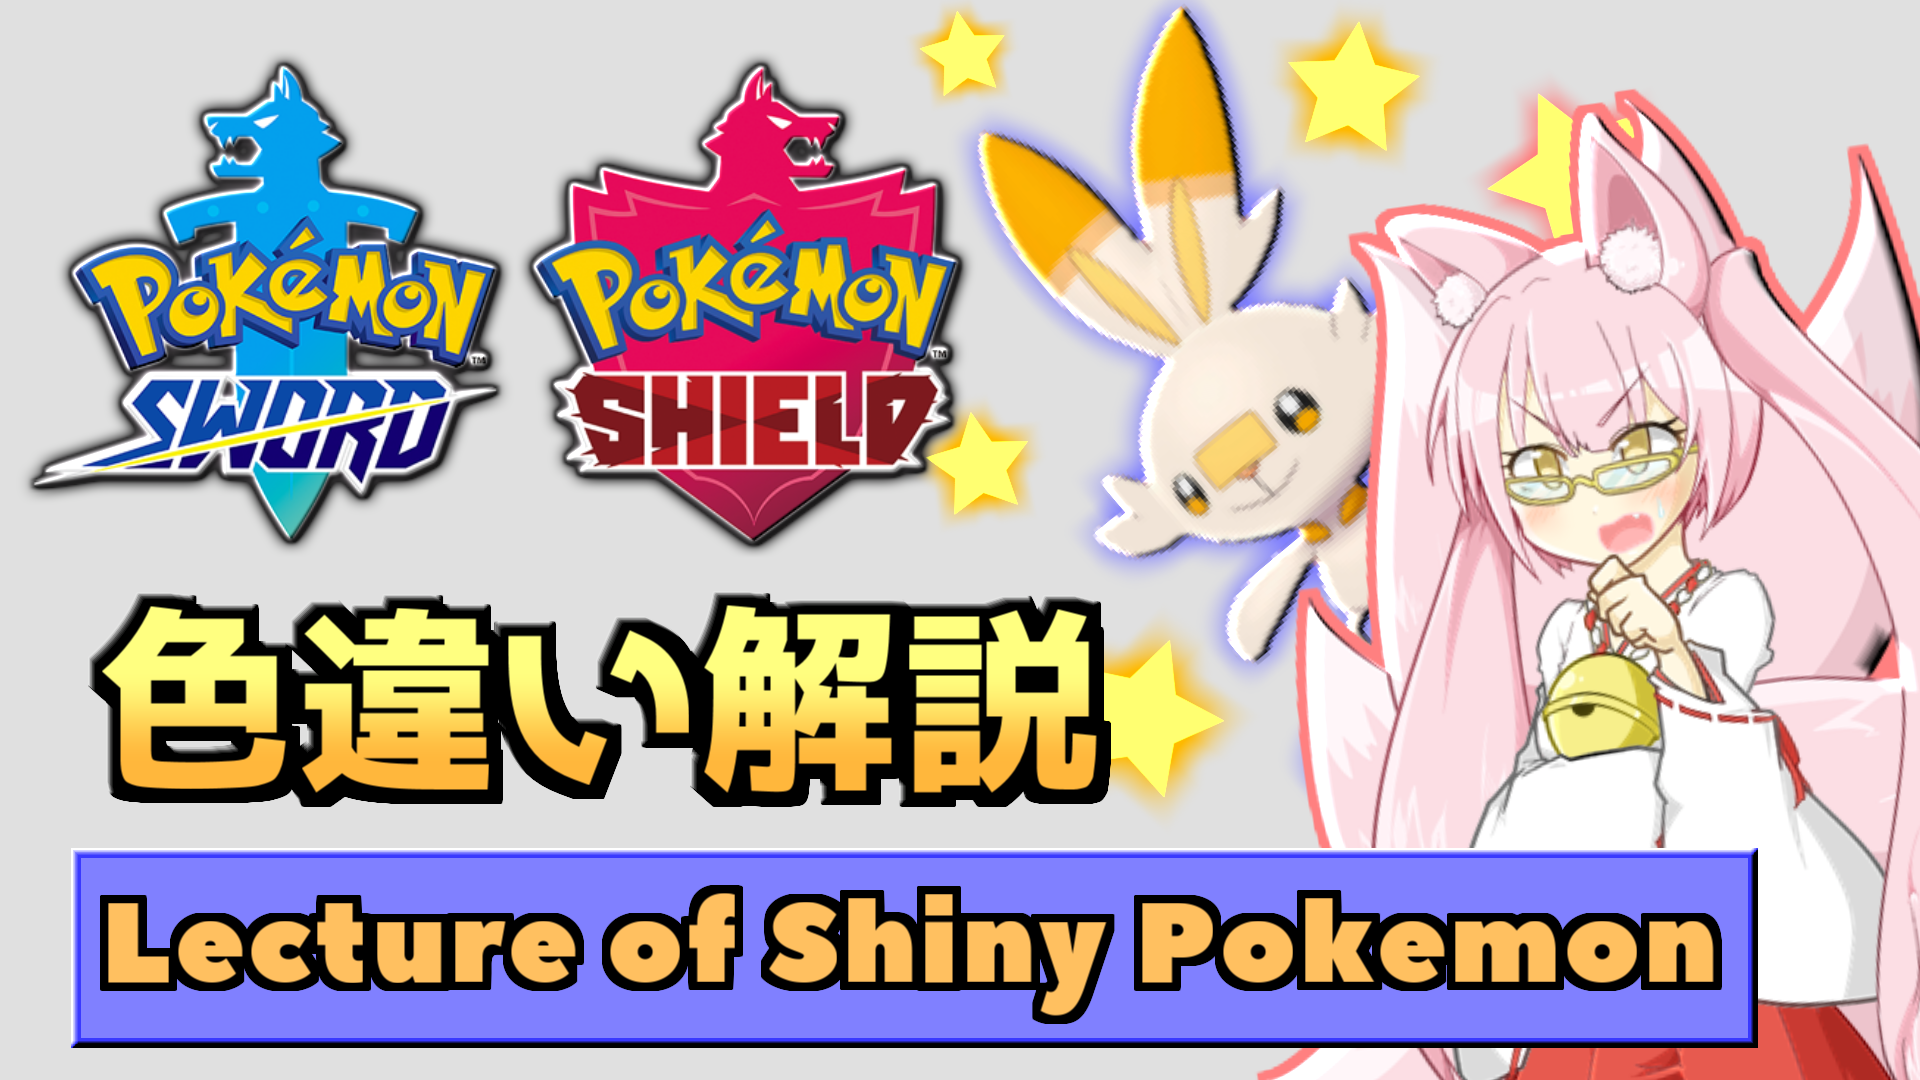 【解説】ポケモン剣盾色違い講座 | Lecture of Shiny Pokémon Sword & Shield